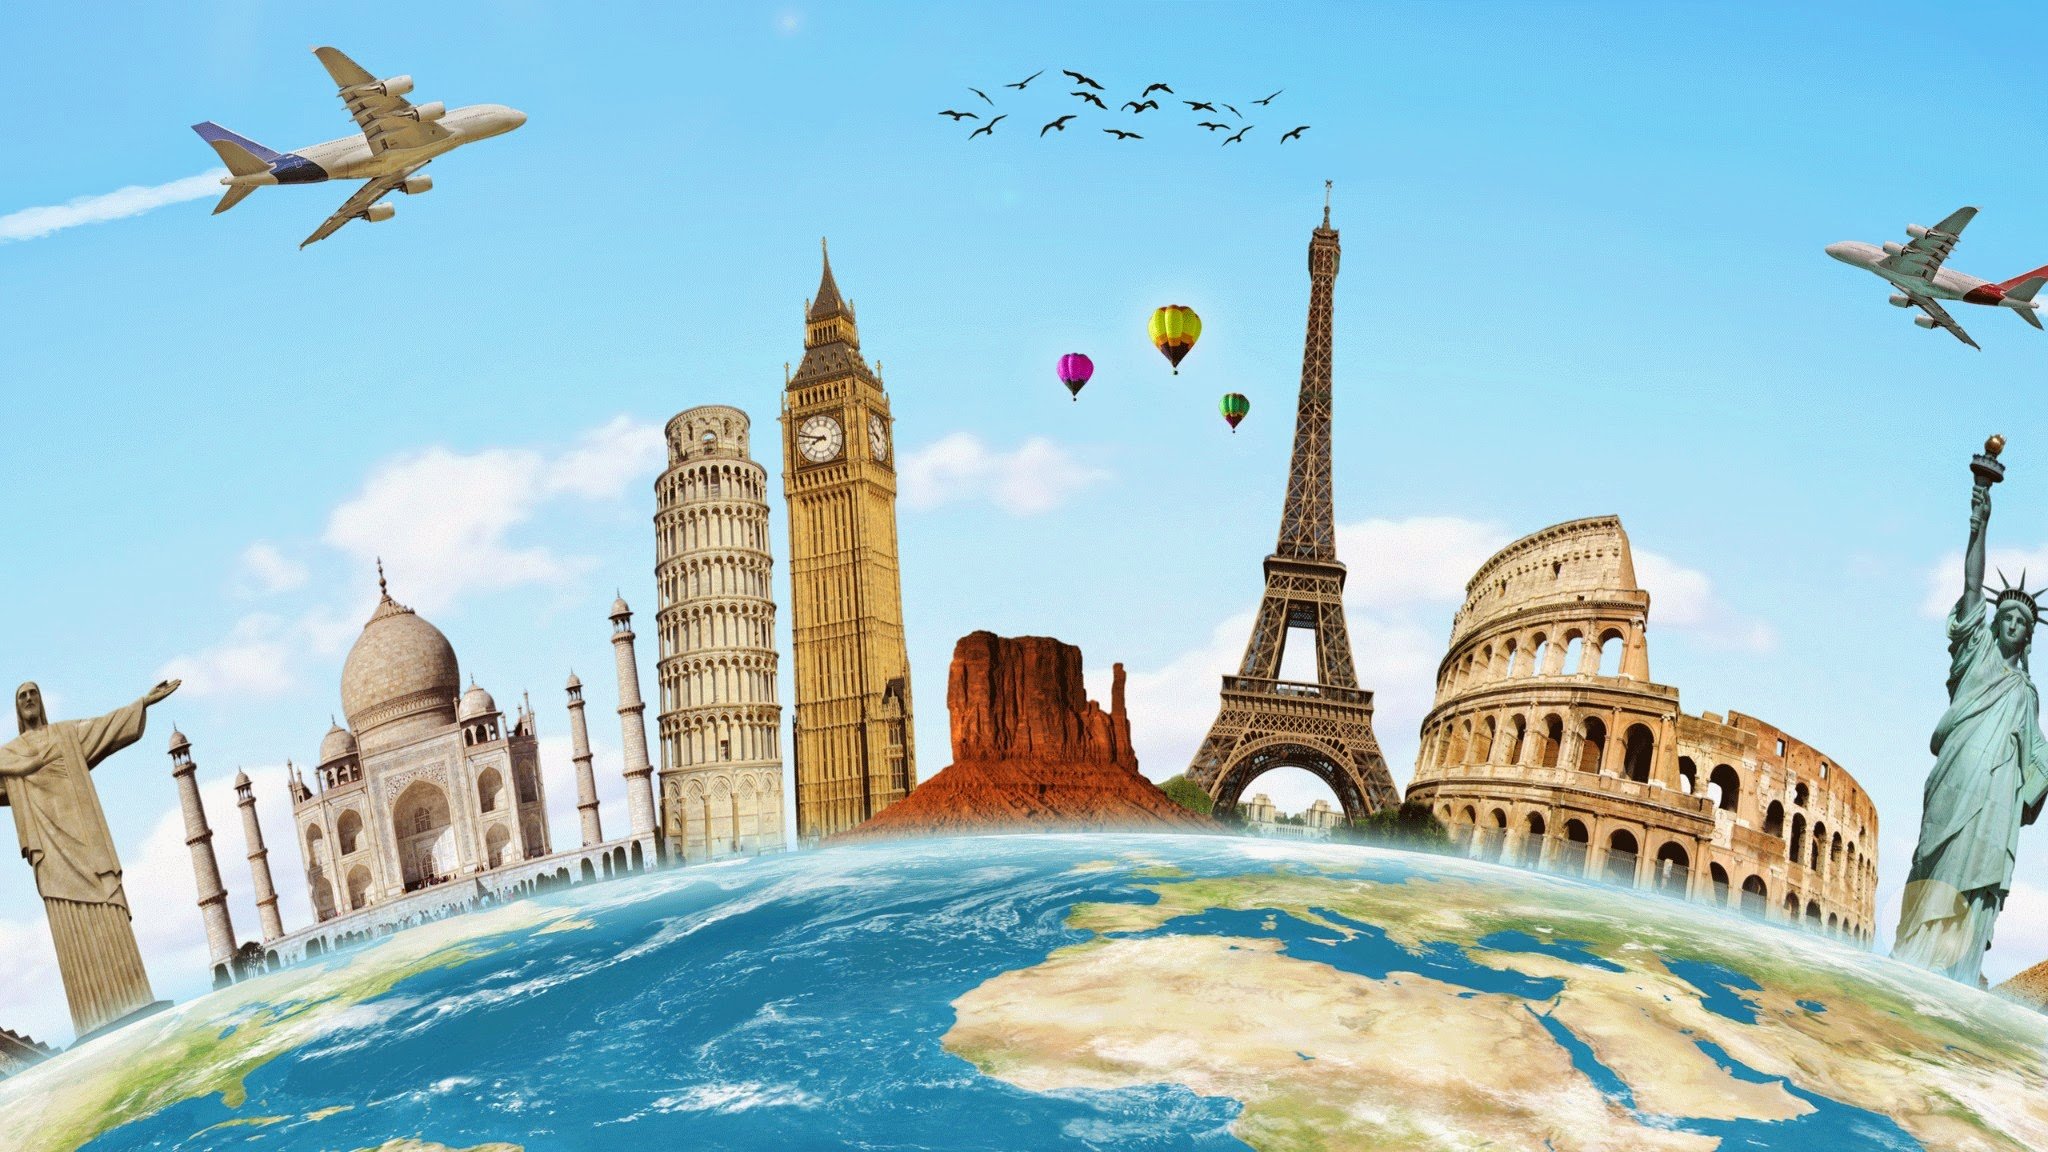 Съездить в европу дешево: 10 лайфхаков бюджетных путешествий